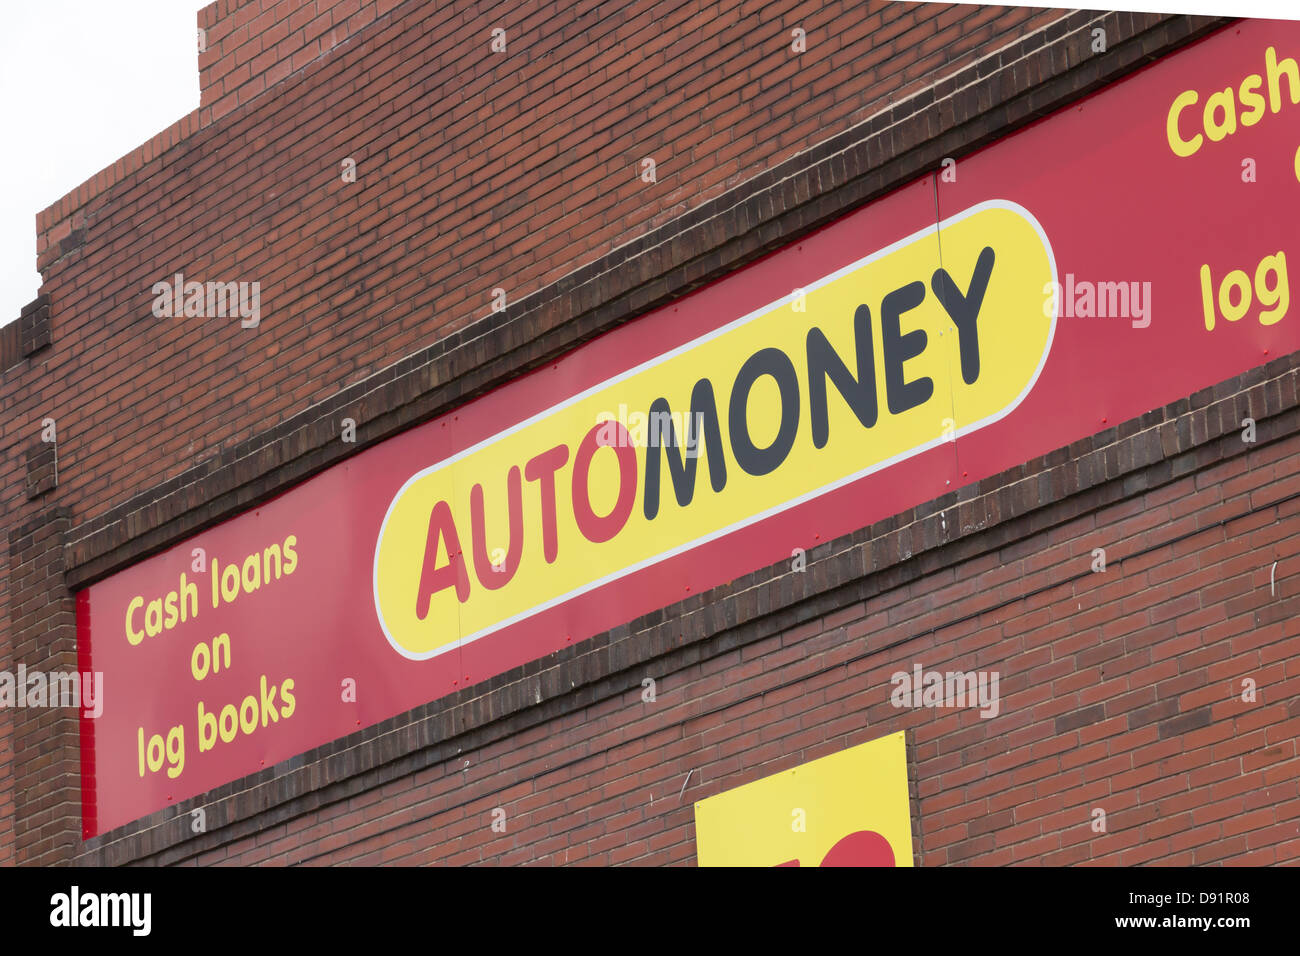 AutoMoney Büro in Bolton. Automoney sind kurzfristig Bargeld Kredit Spezialist mit den Kreditnehmern Auto Logbuch als Sicherheit. Stockfoto